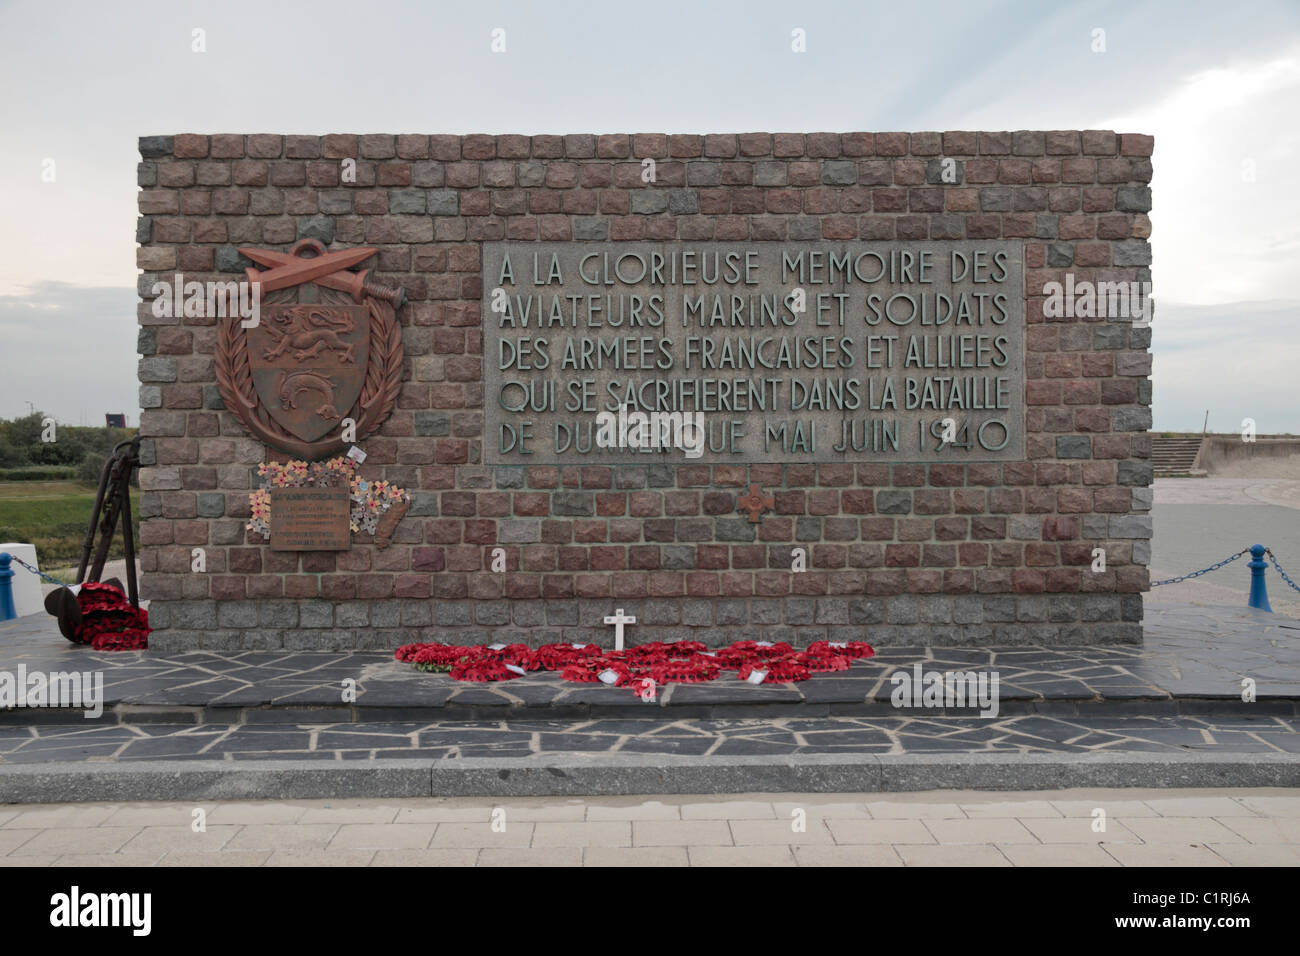 Denkmal für die Schlacht von Dünkirchen, der Alliierten Evakuierung von den Stränden von Dunkerque 1940, Dunkerque (Dünkirchen), Frankreich. Stockfoto